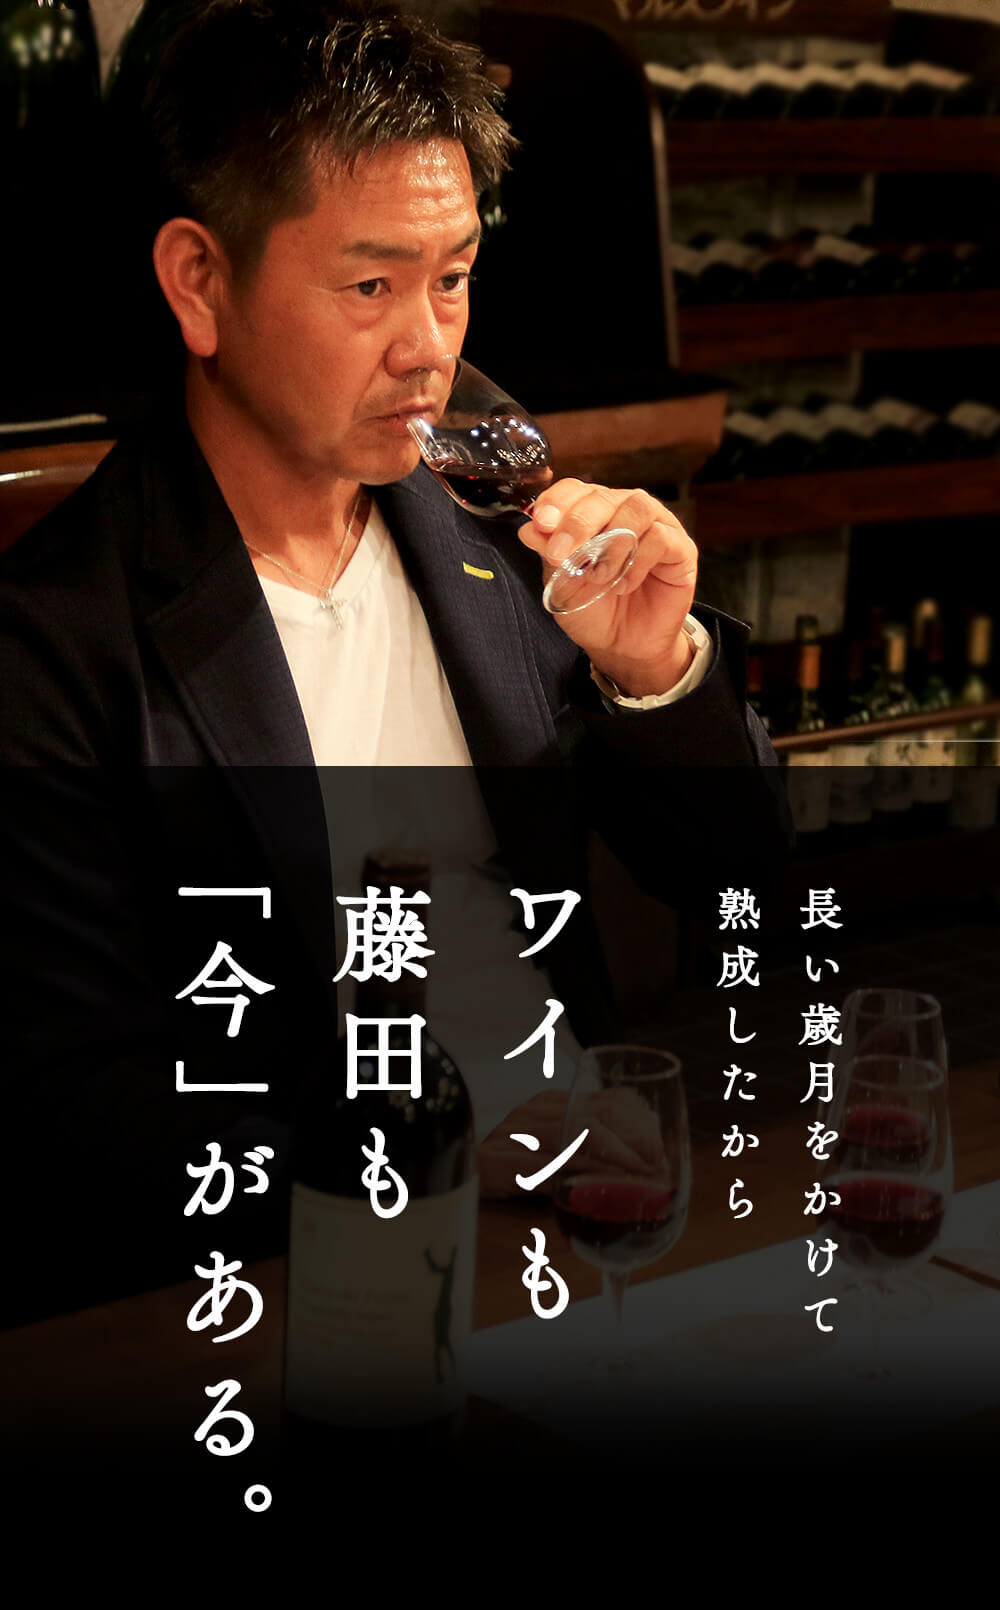 長い歳月をかけて 熟成したから ワインも 藤田も 「今」がある。